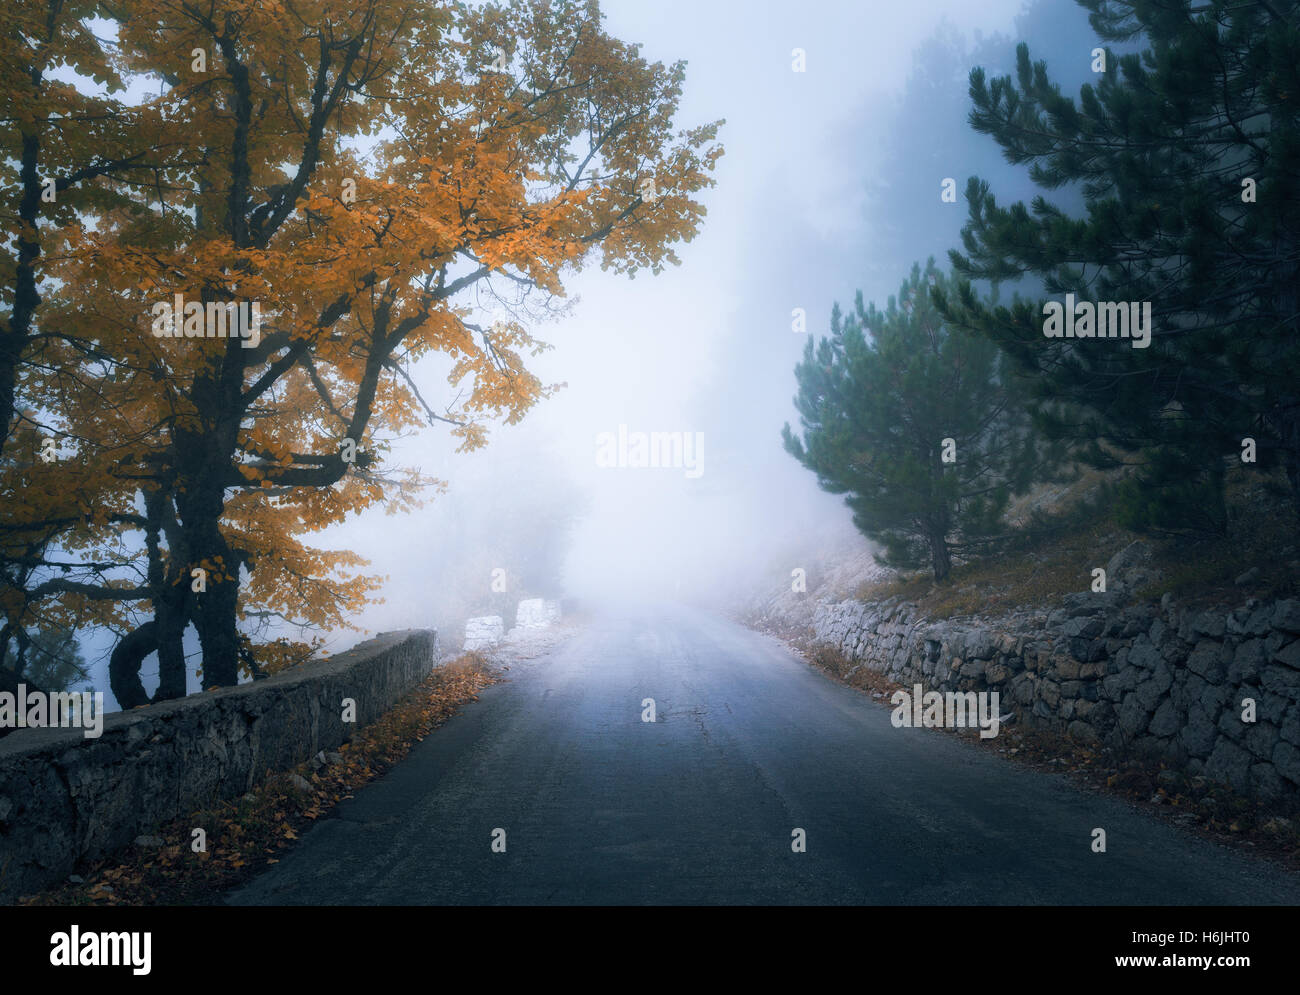 Otoño místico bosque neblinoso con la carretera. Caída misty woods en la niebla. El colorido paisaje con árboles, mountain road, naranja y amarillo Foto de stock